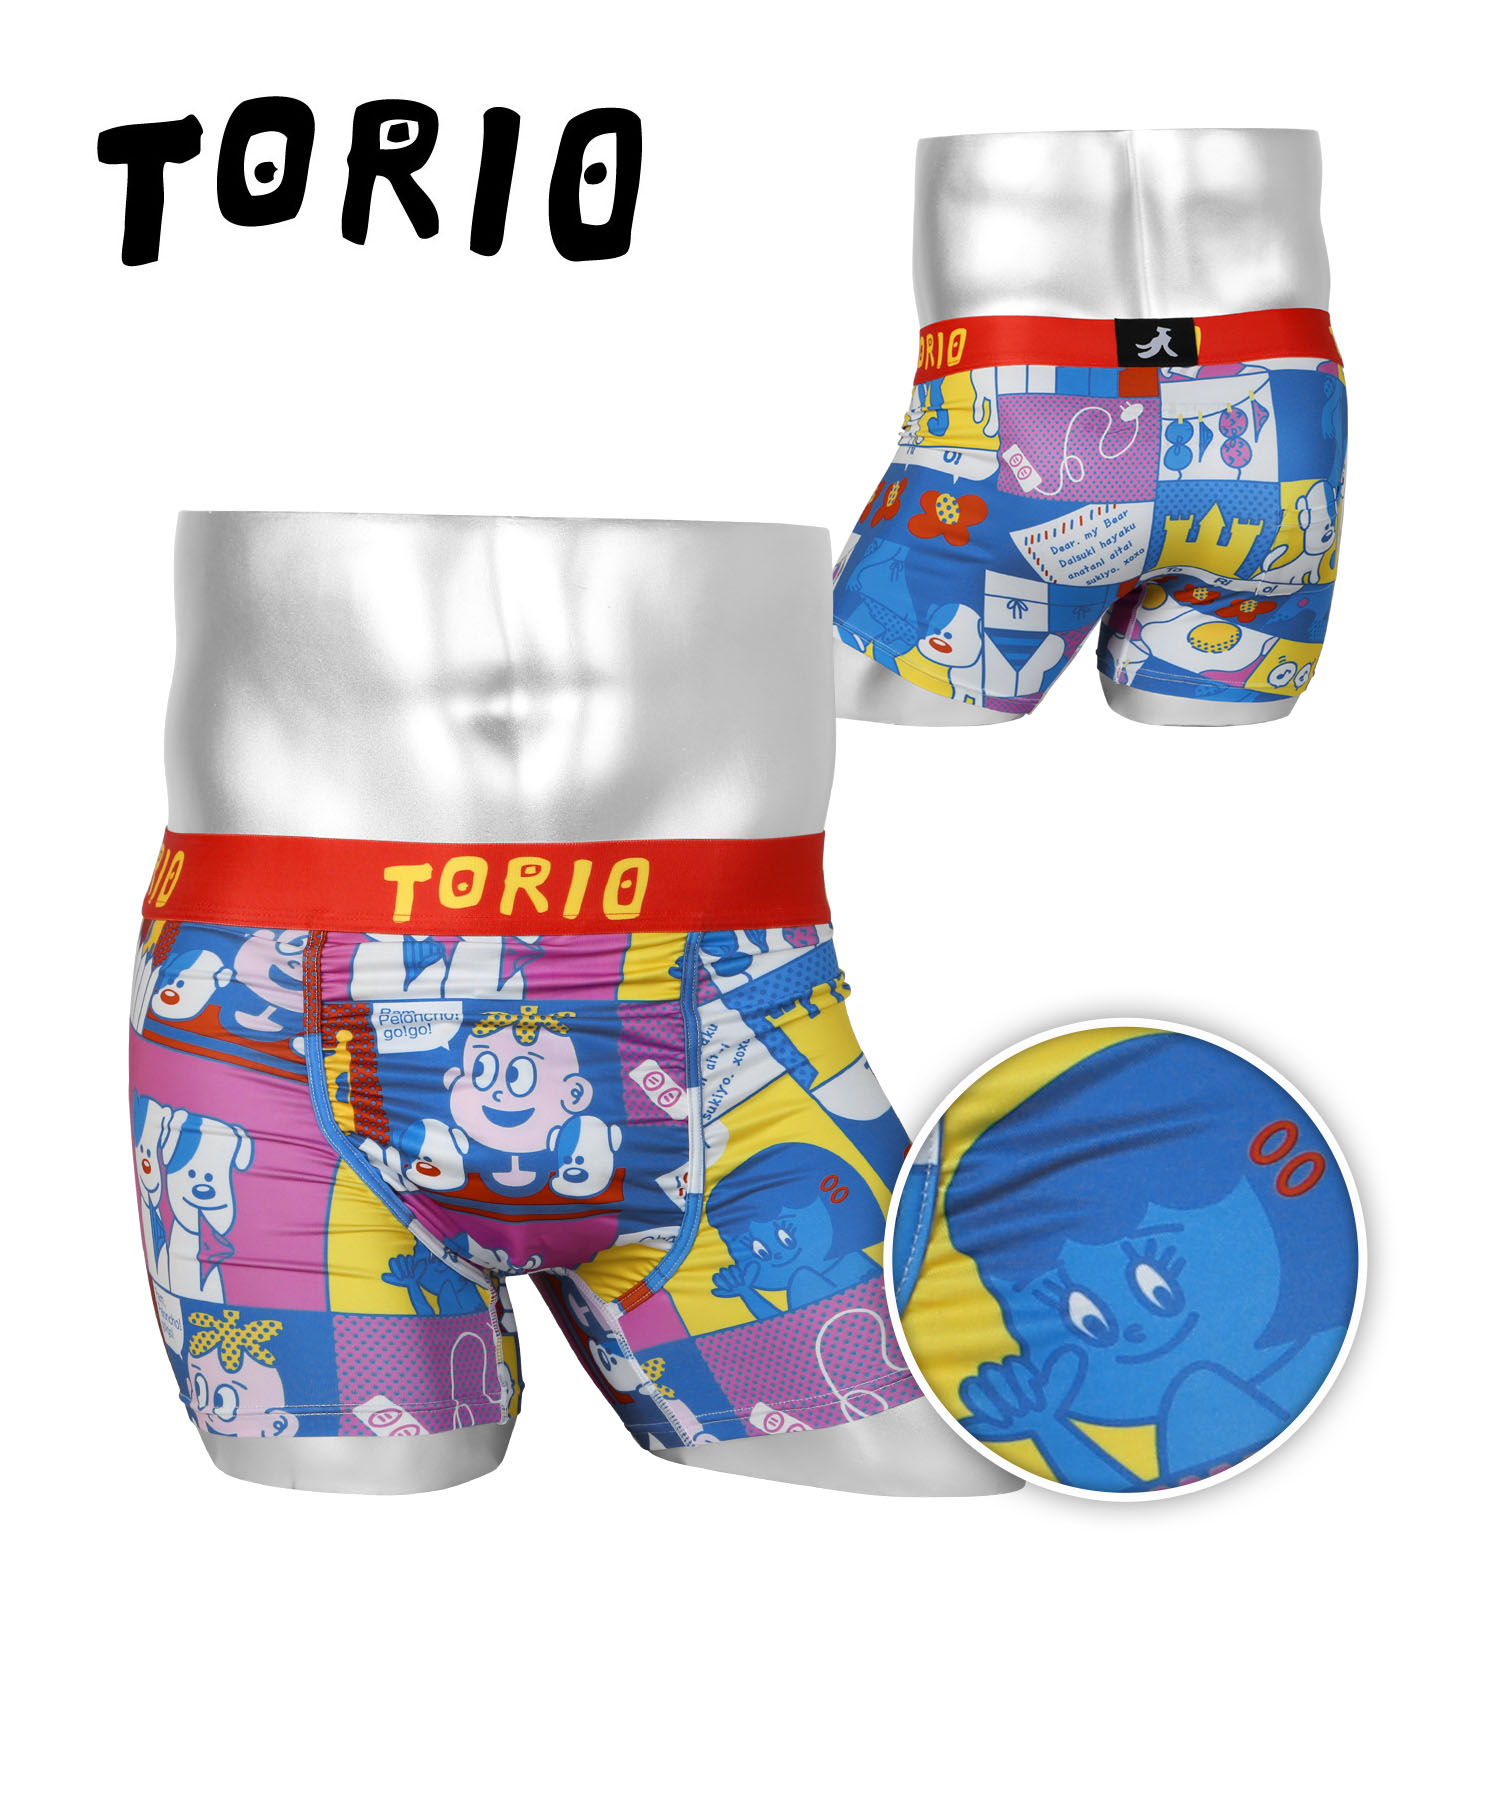 トリオ TORIO ボクサーパンツ メンズ アンダーウェア 男性 下着 ツルツル 速乾 ブランド おしゃれ かわいい 蓄光 光るパンツ プレゼント  ギフト メール便